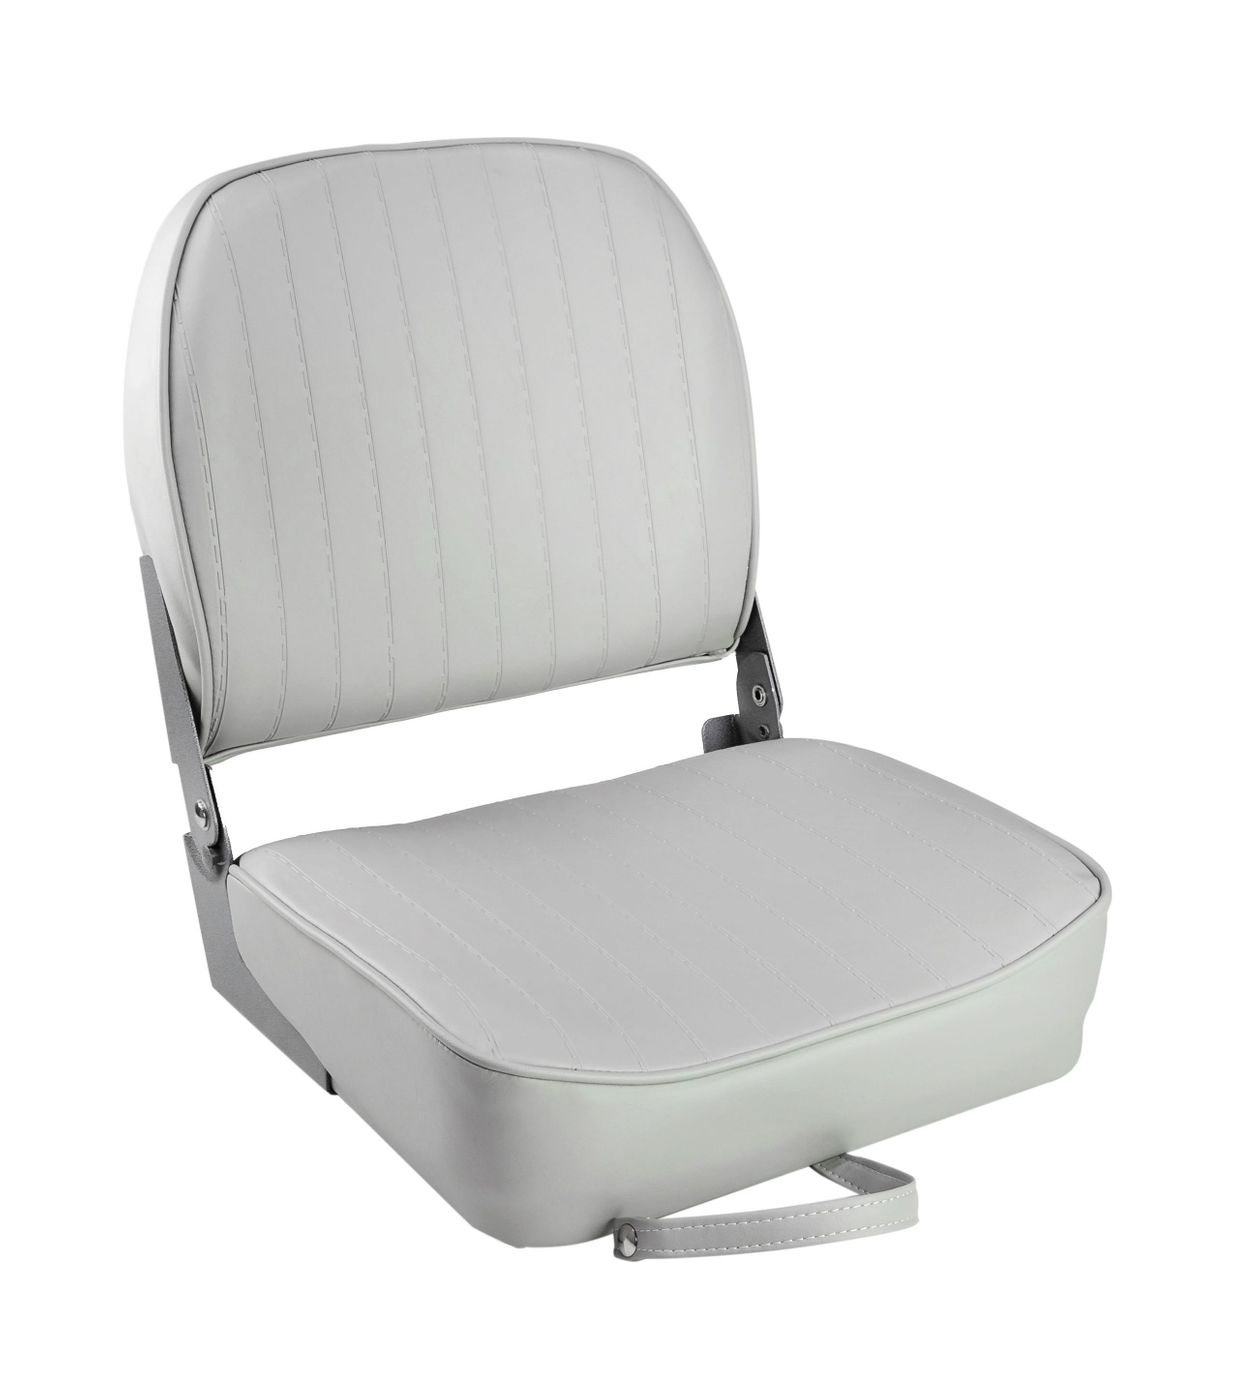 Кресло складное мягкое ECONOMY с низкой спинкой, цвет серый 1040623 кресло складное мягкое economy low back seat синее 75103b